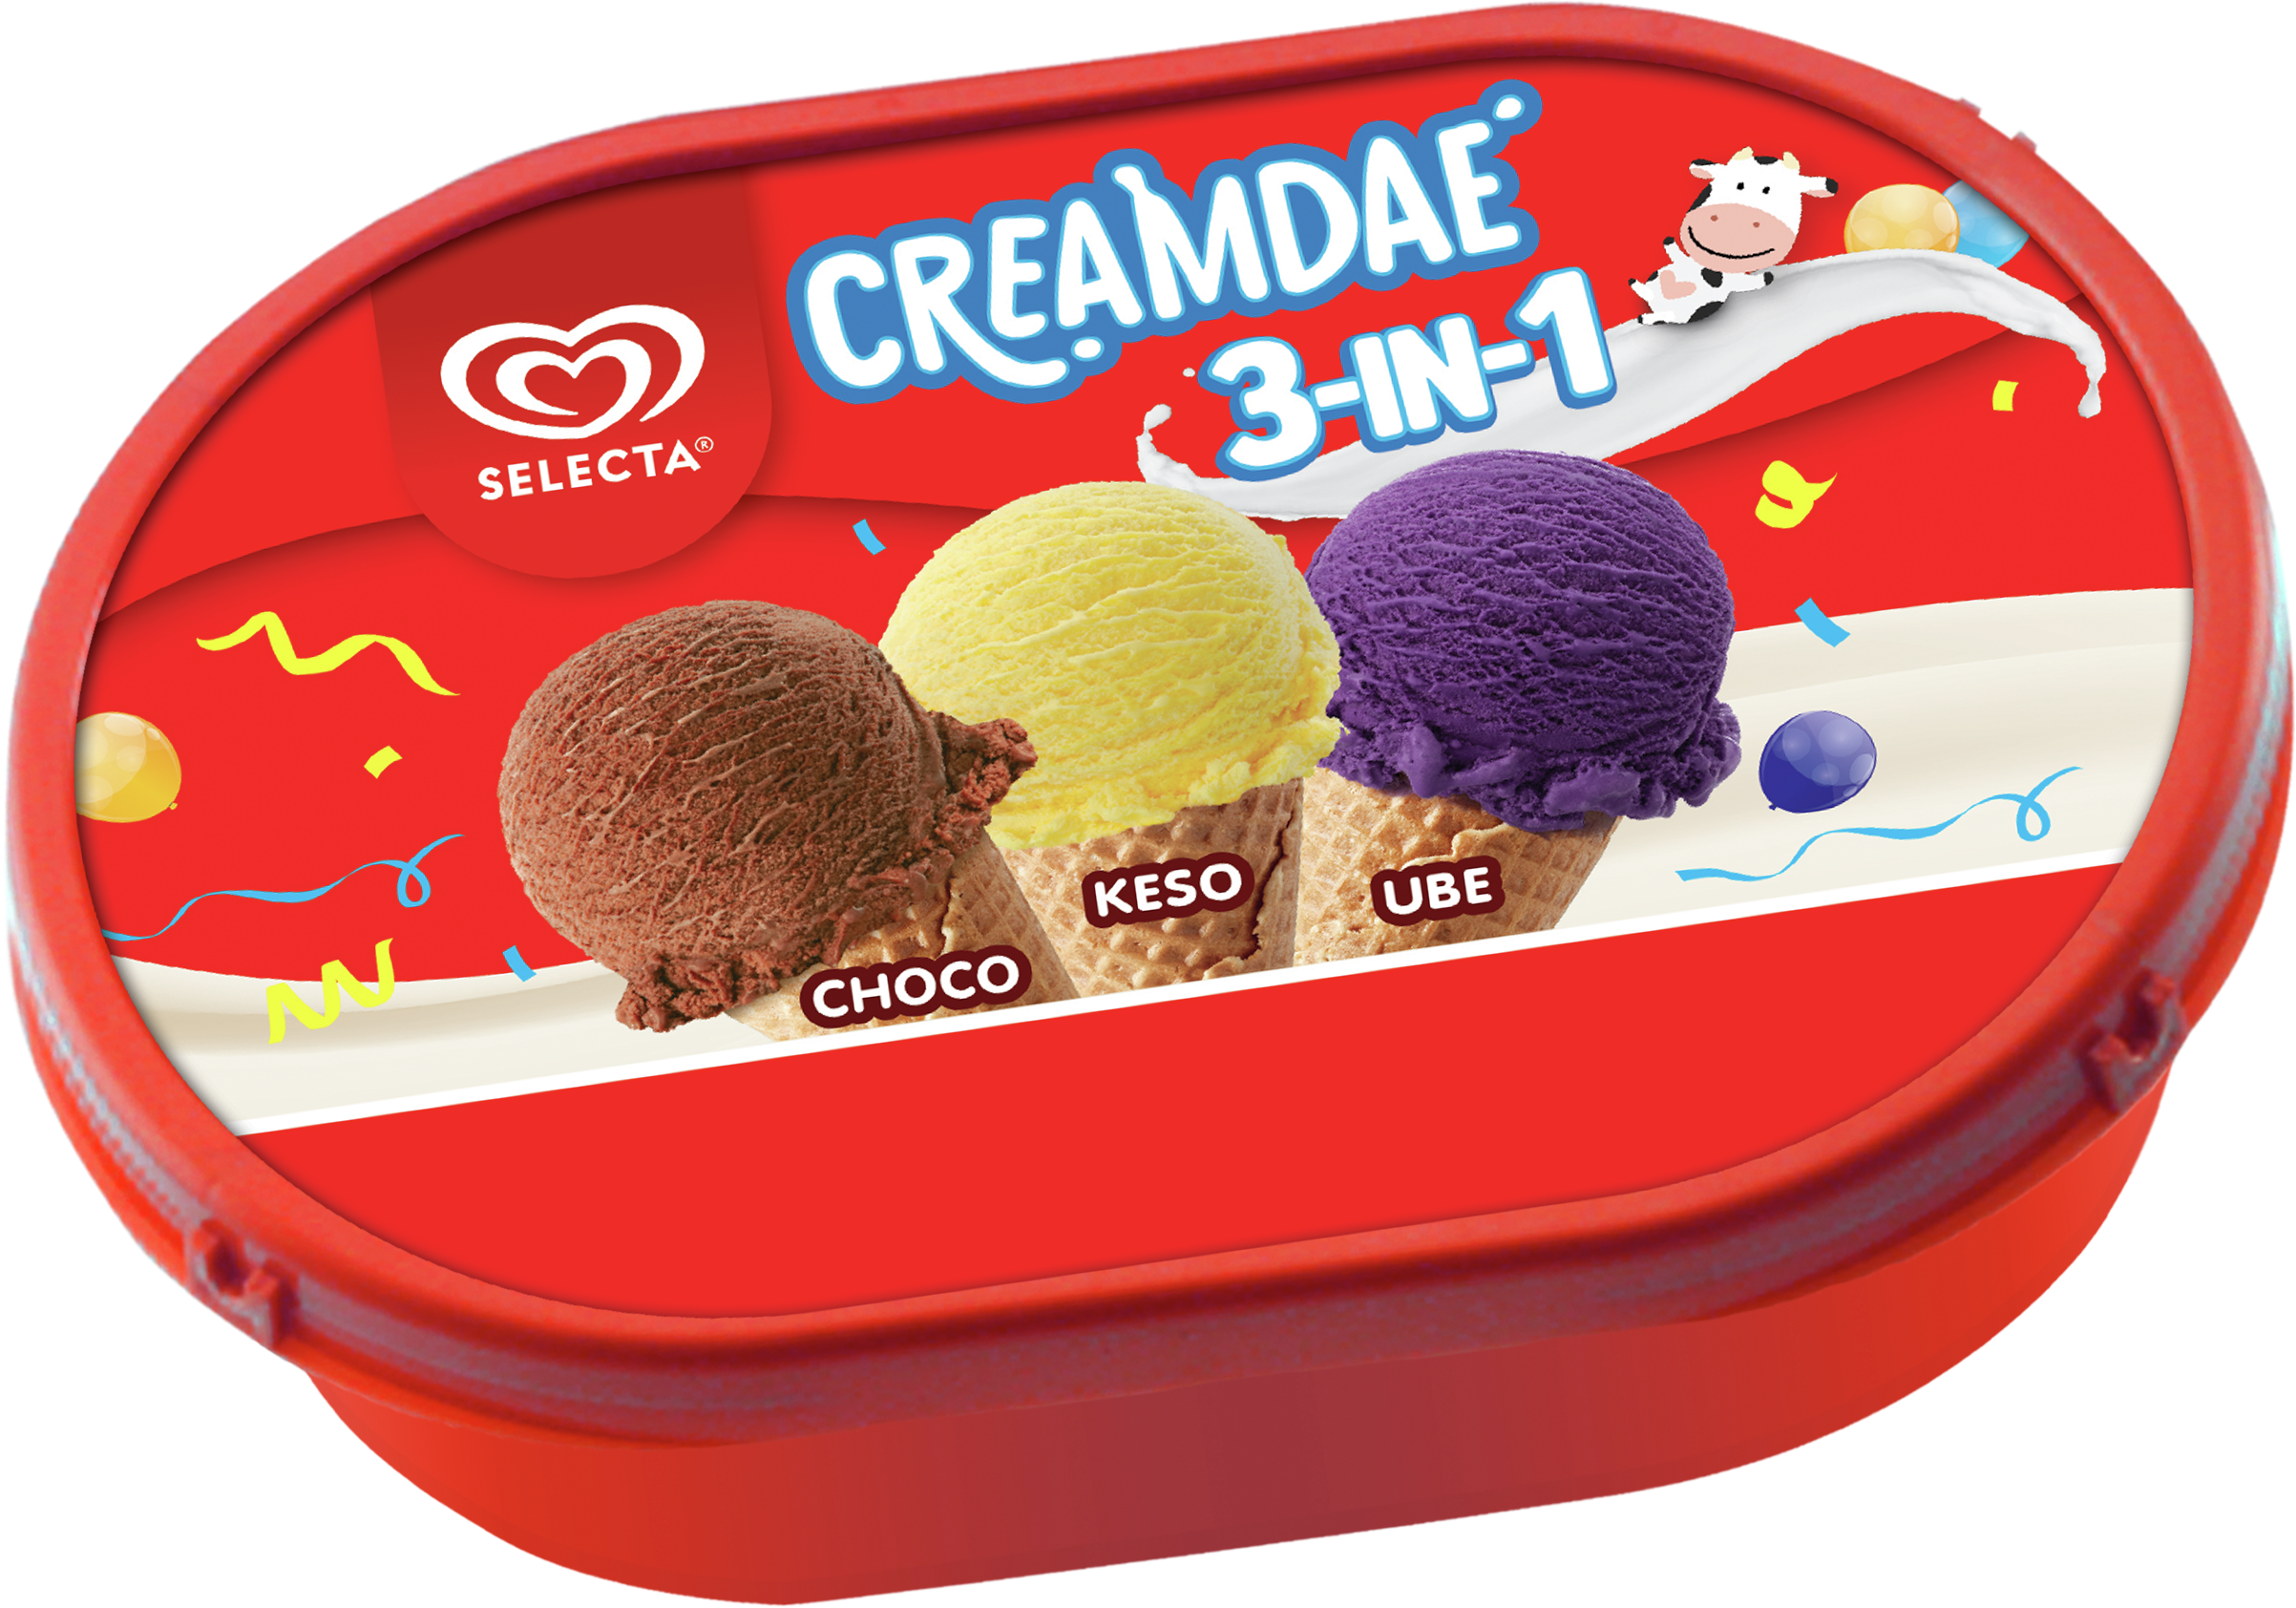 Selecta Creamdae 3in1 Choco - Keso - Ube